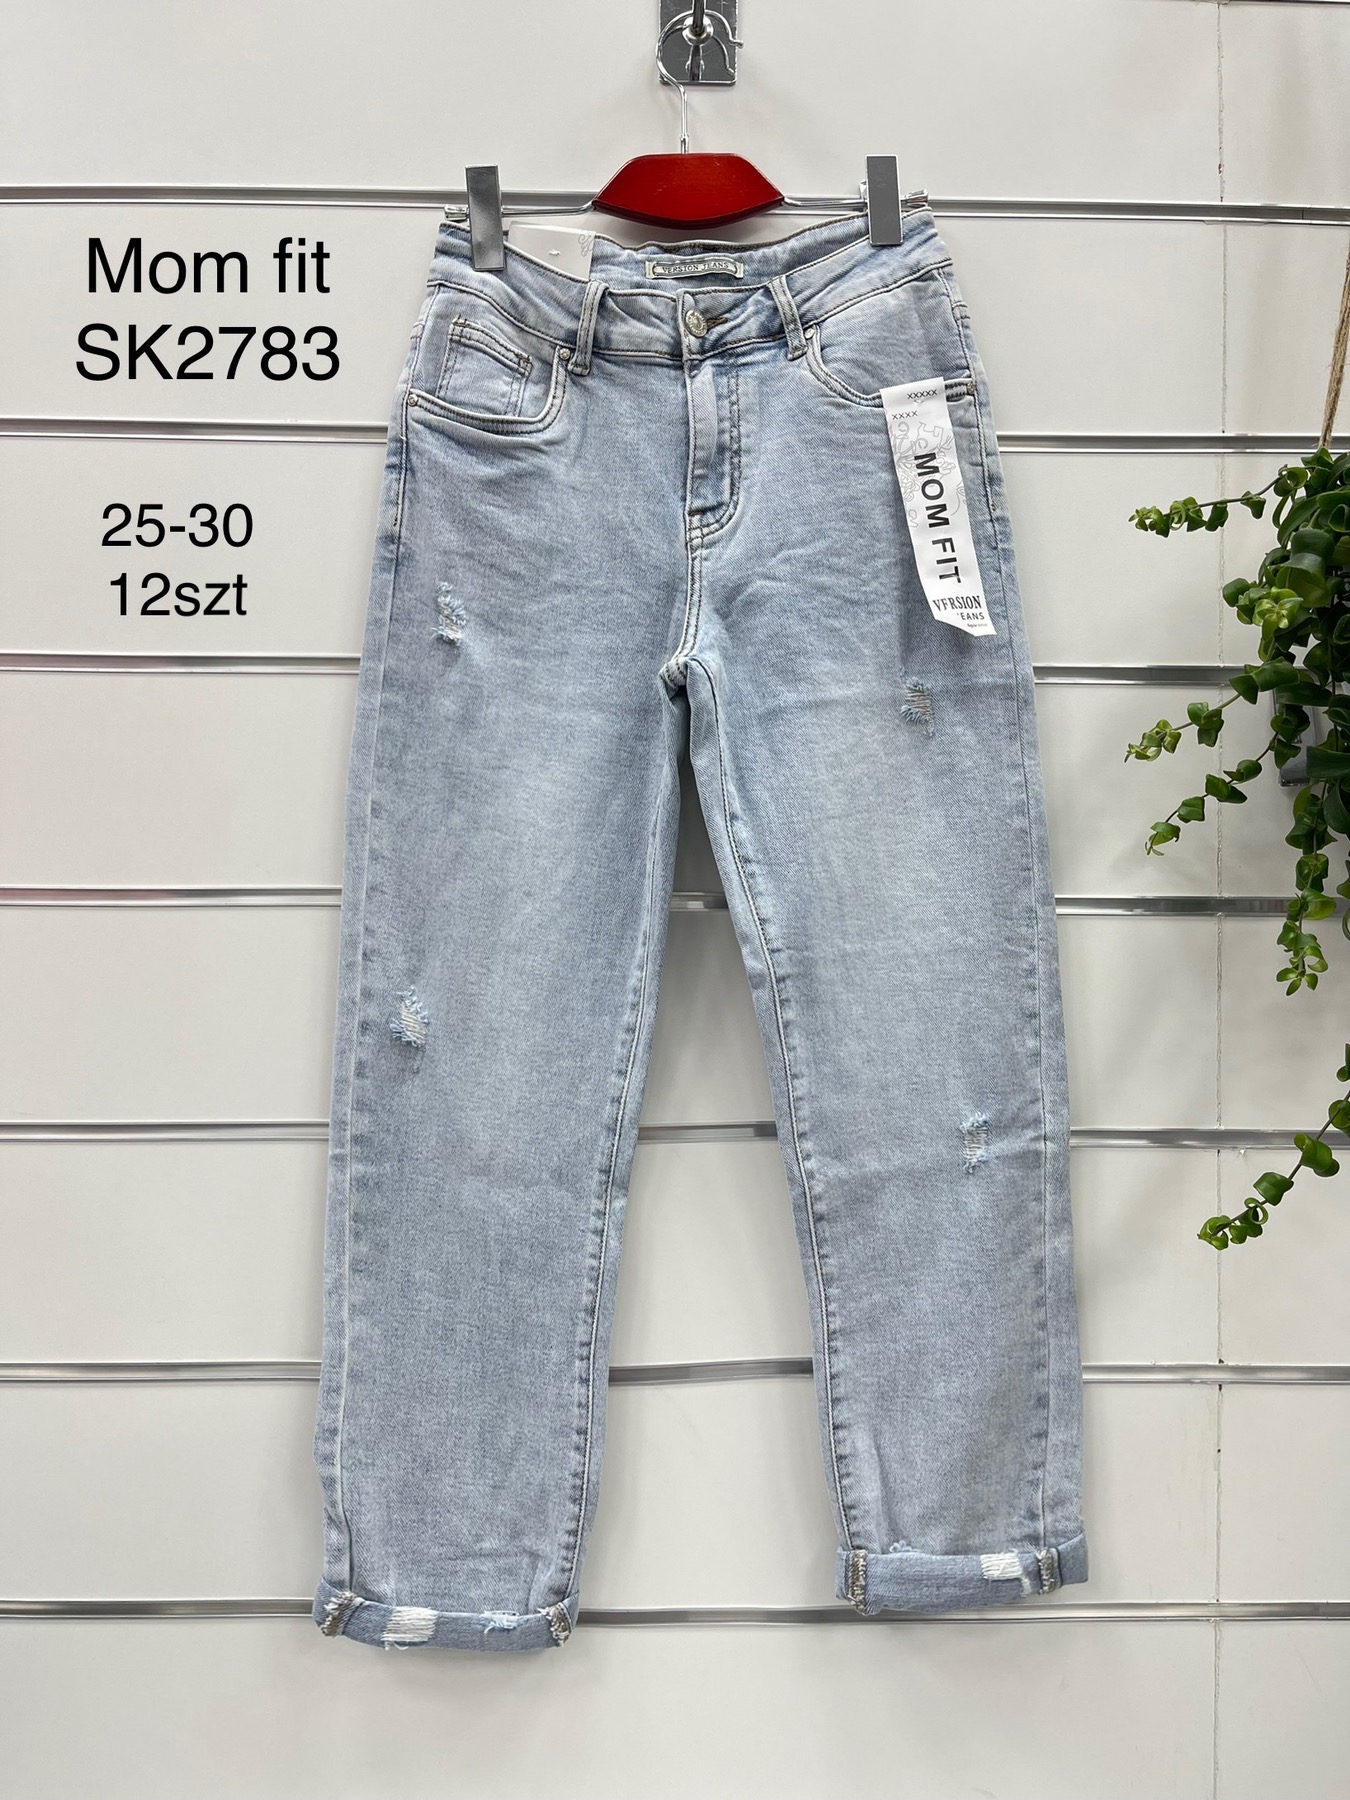 Spodnie damskie jeans Roz 25-30.  1 kolor . Paczka 12szt